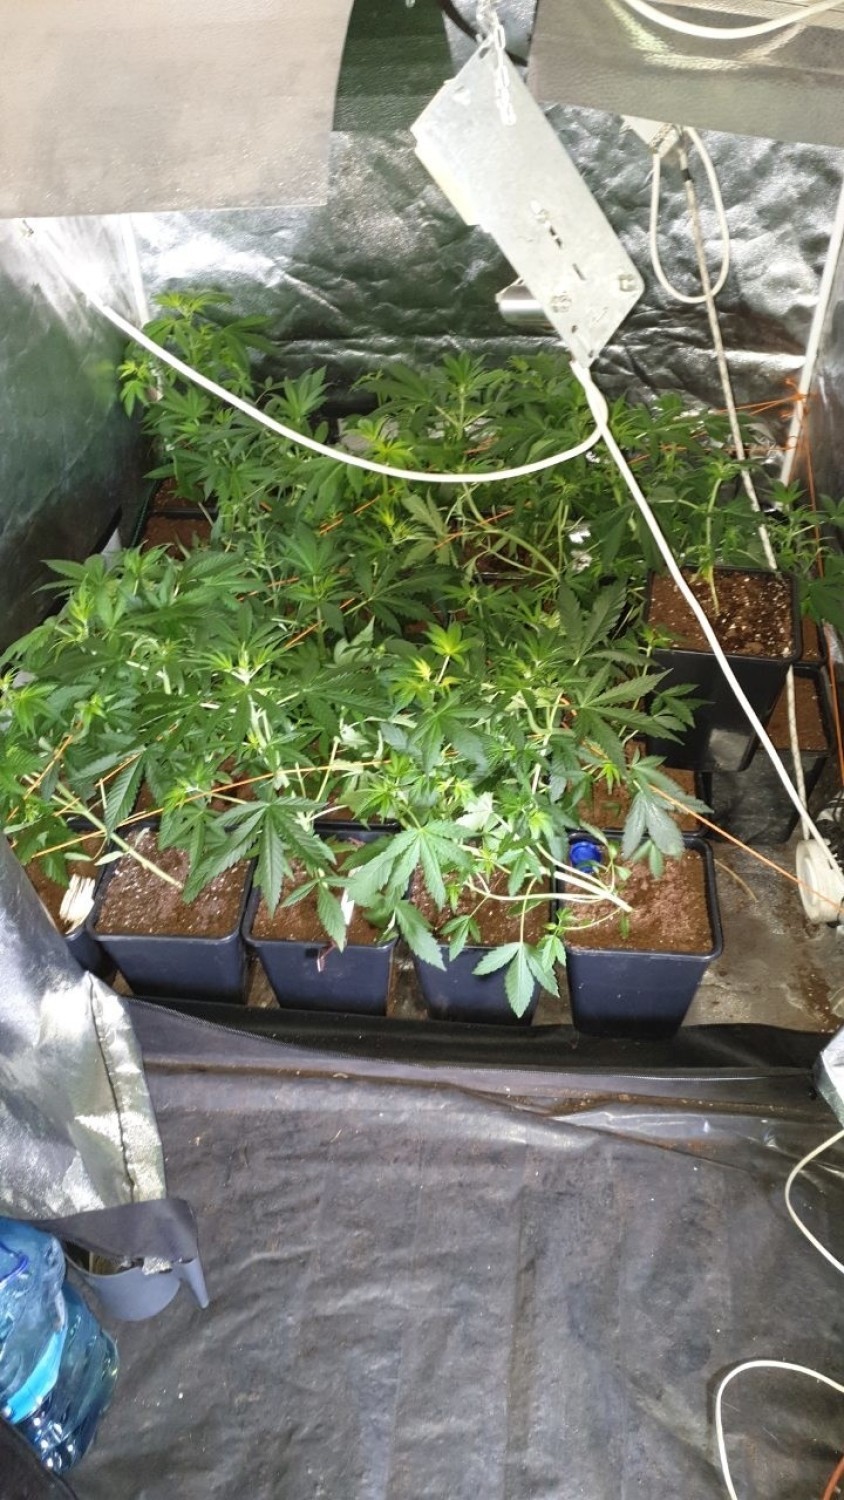 Dwie szafy pełne narkotykowych roślin w mieszkaniu 19-latka w Ostrowcu [ZDJĘCIA]